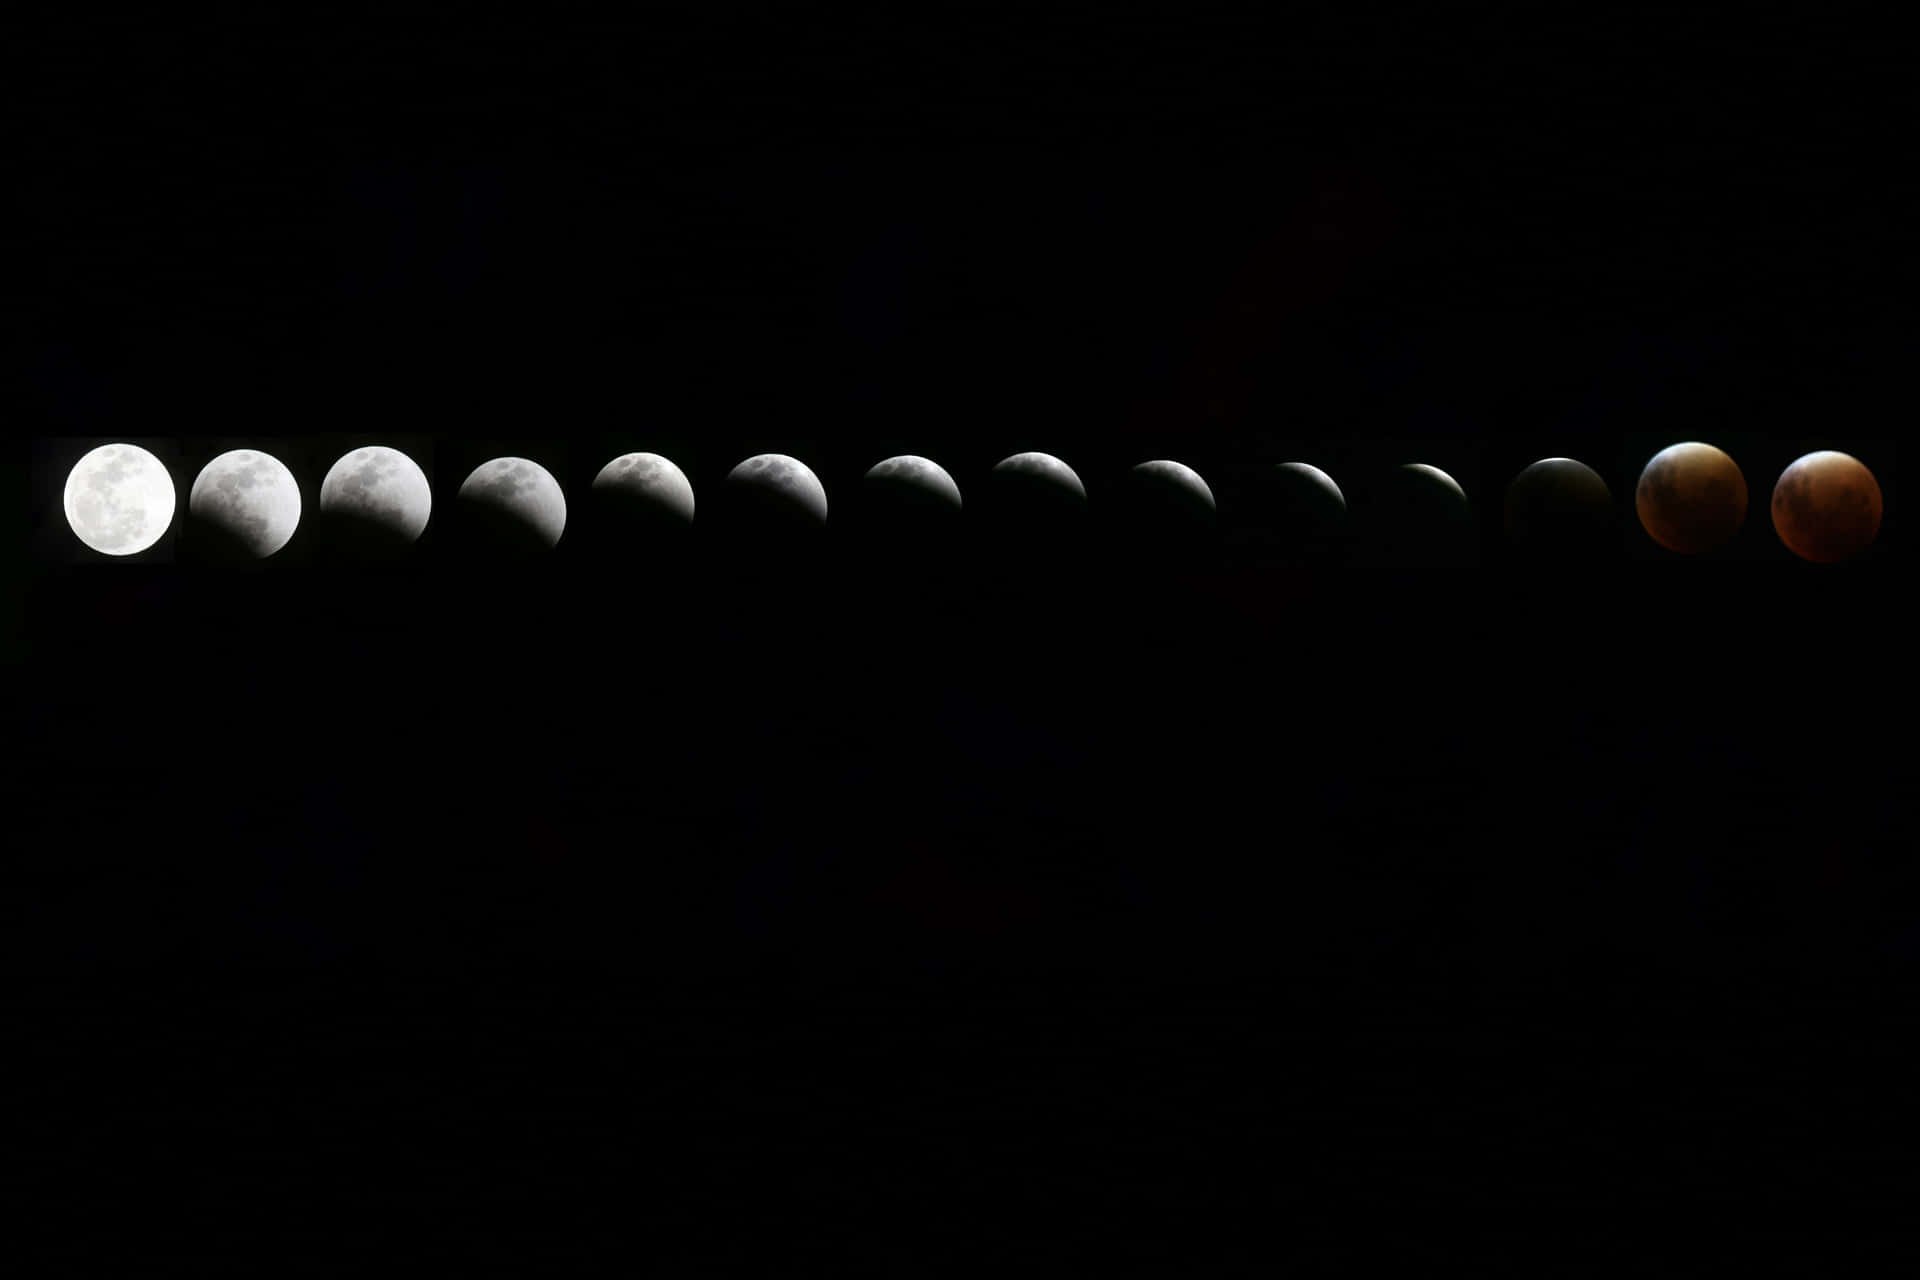 Månfaserna5472 X 3648 Bild